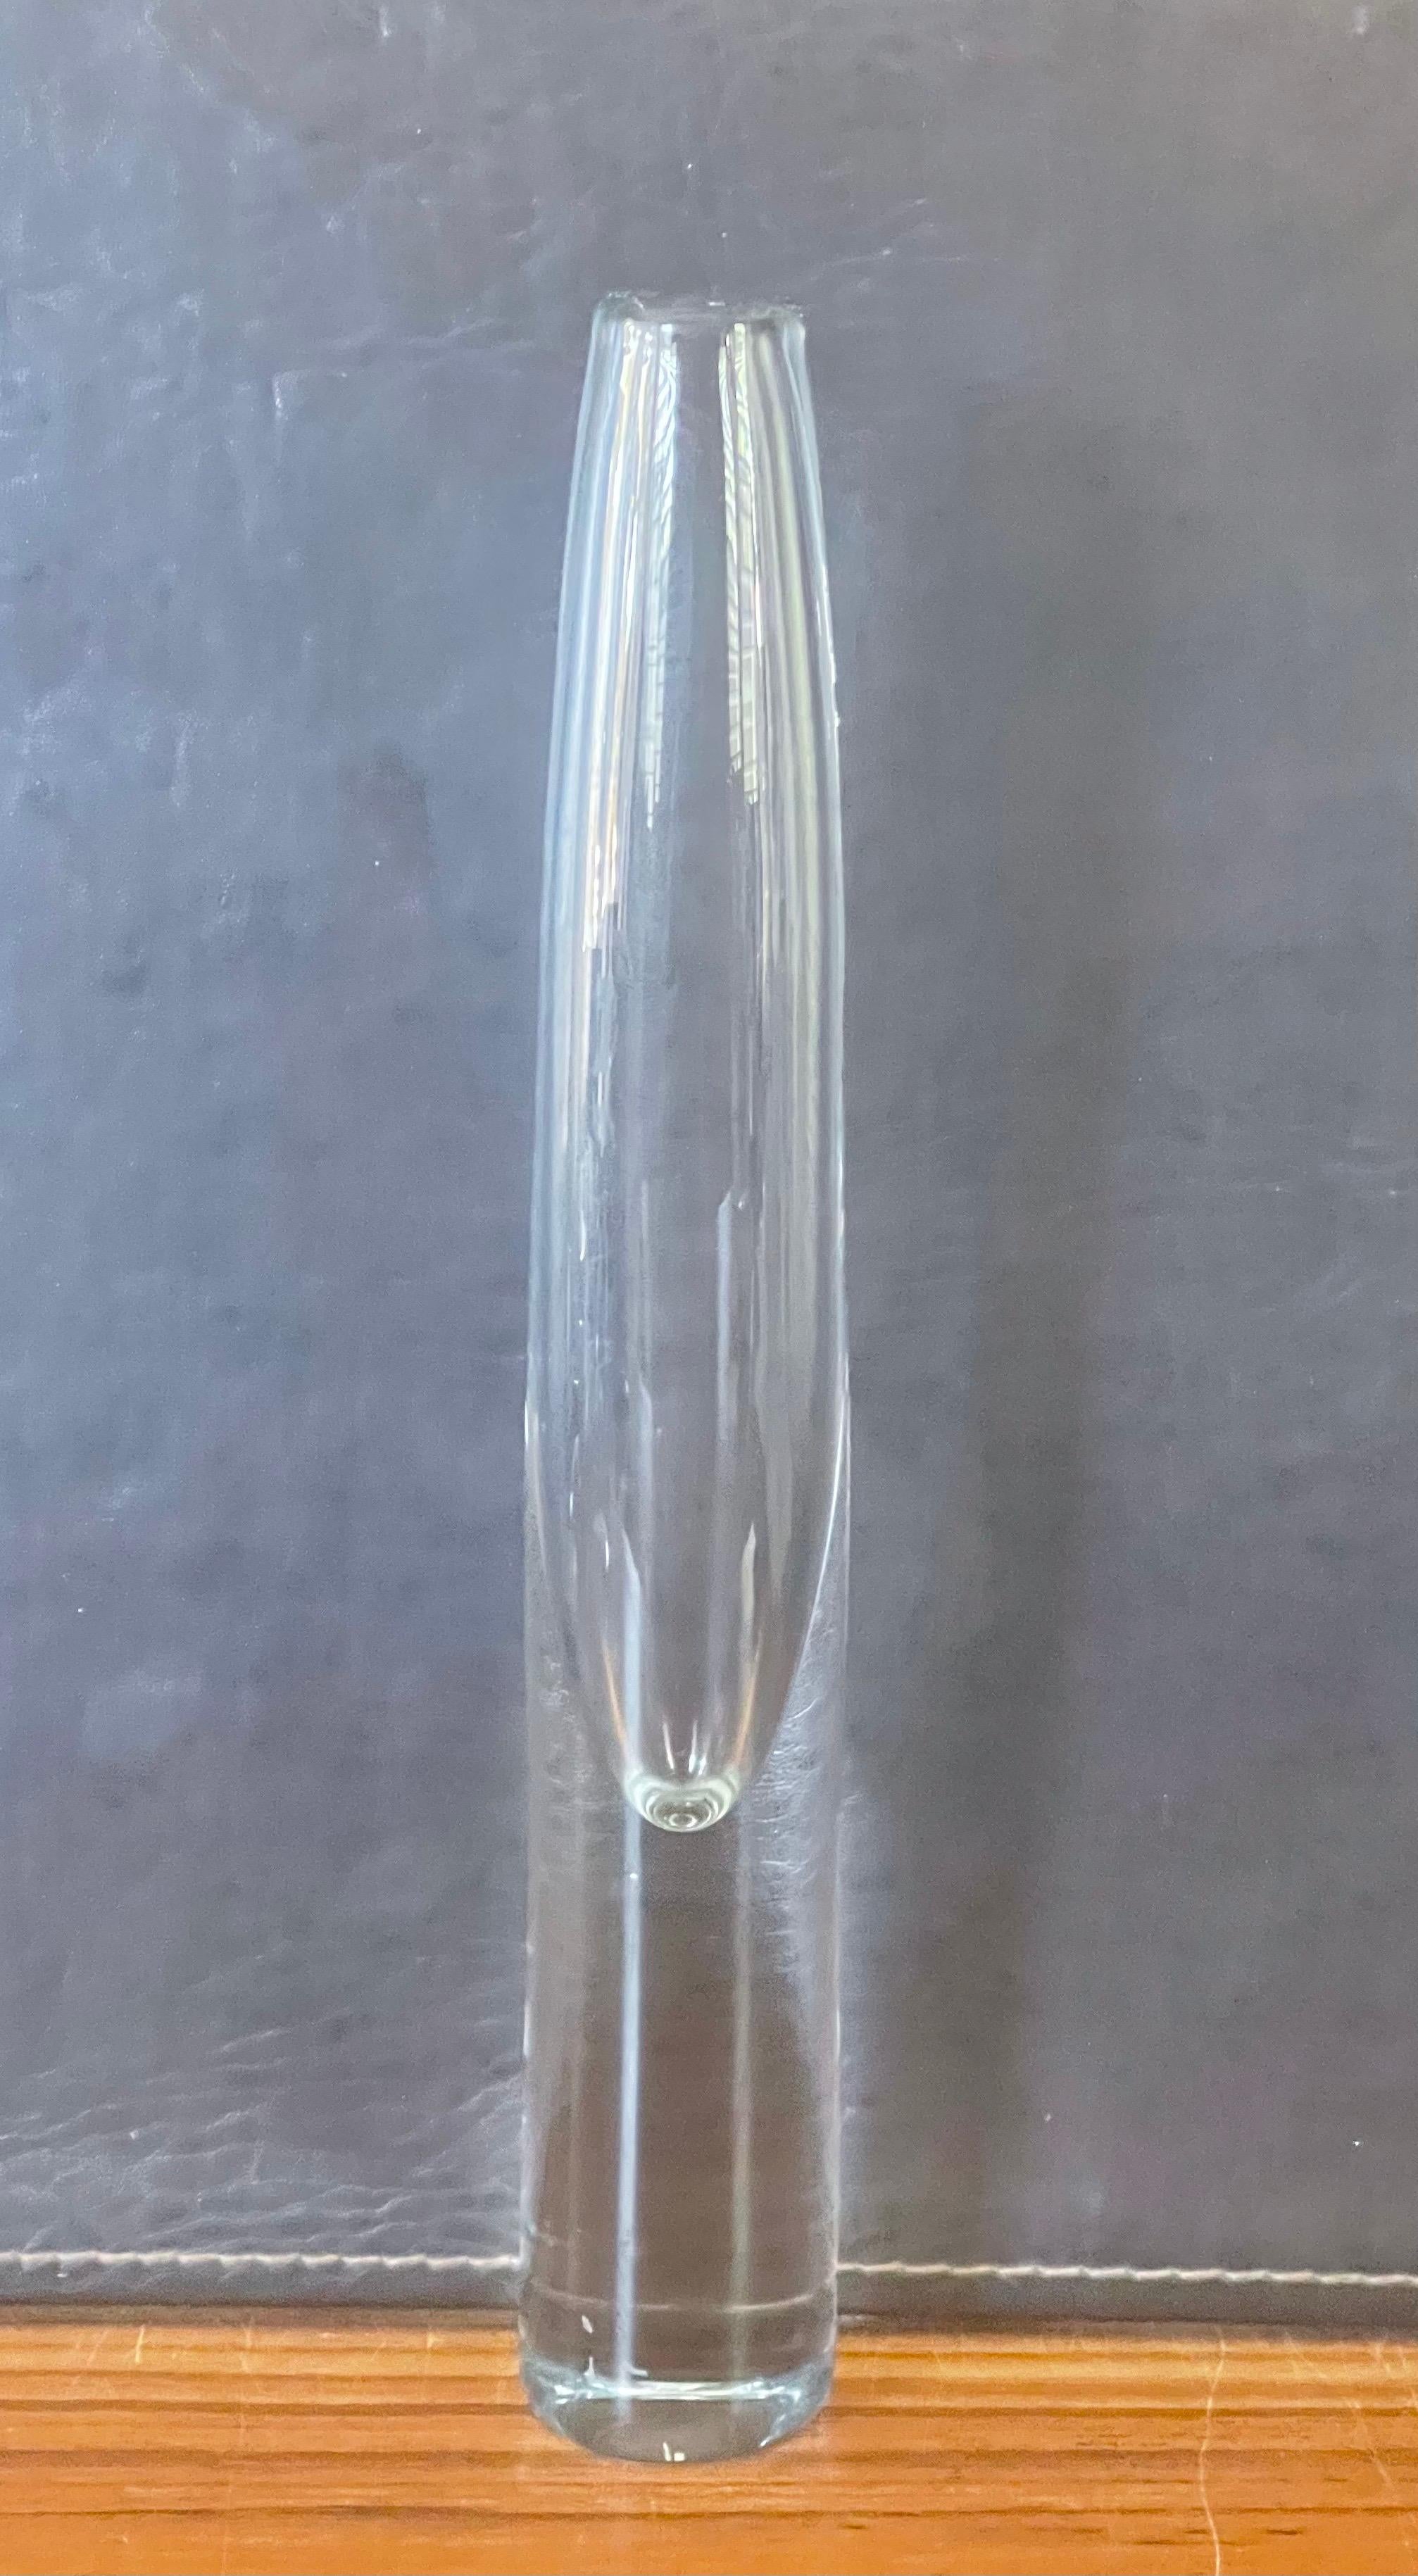 strombergshyttan glass vase